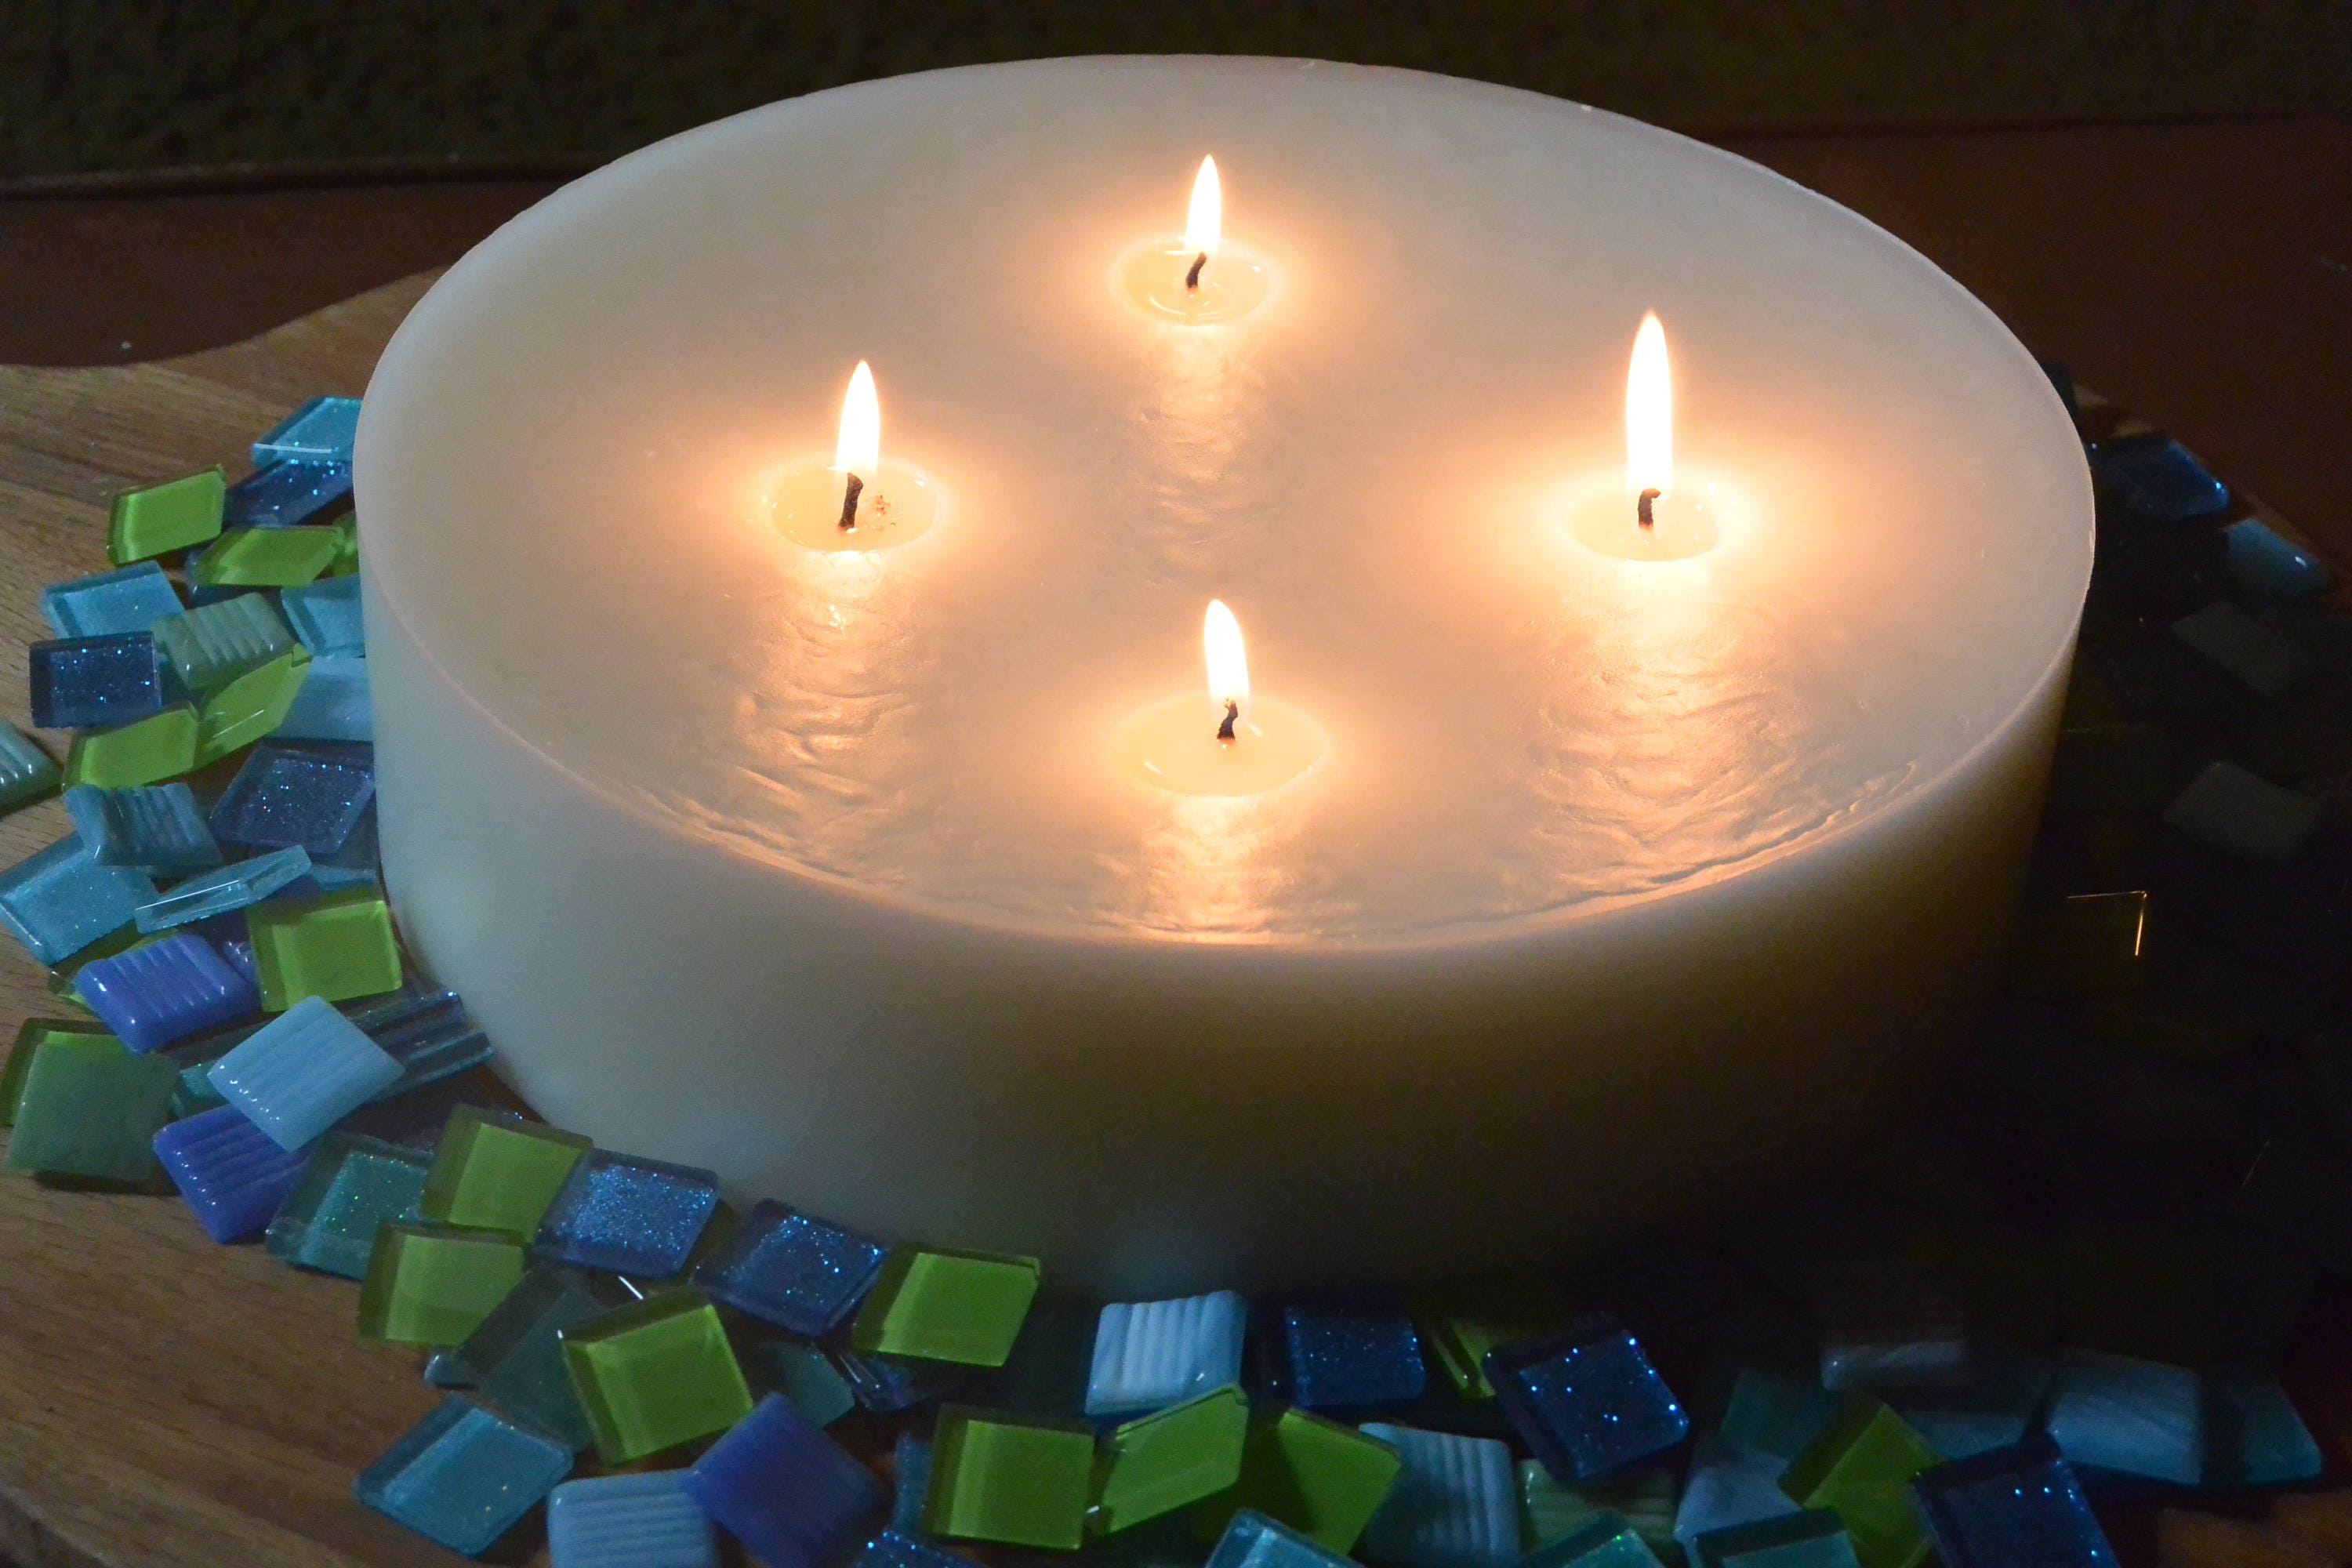 Unique Candles - 10 candles